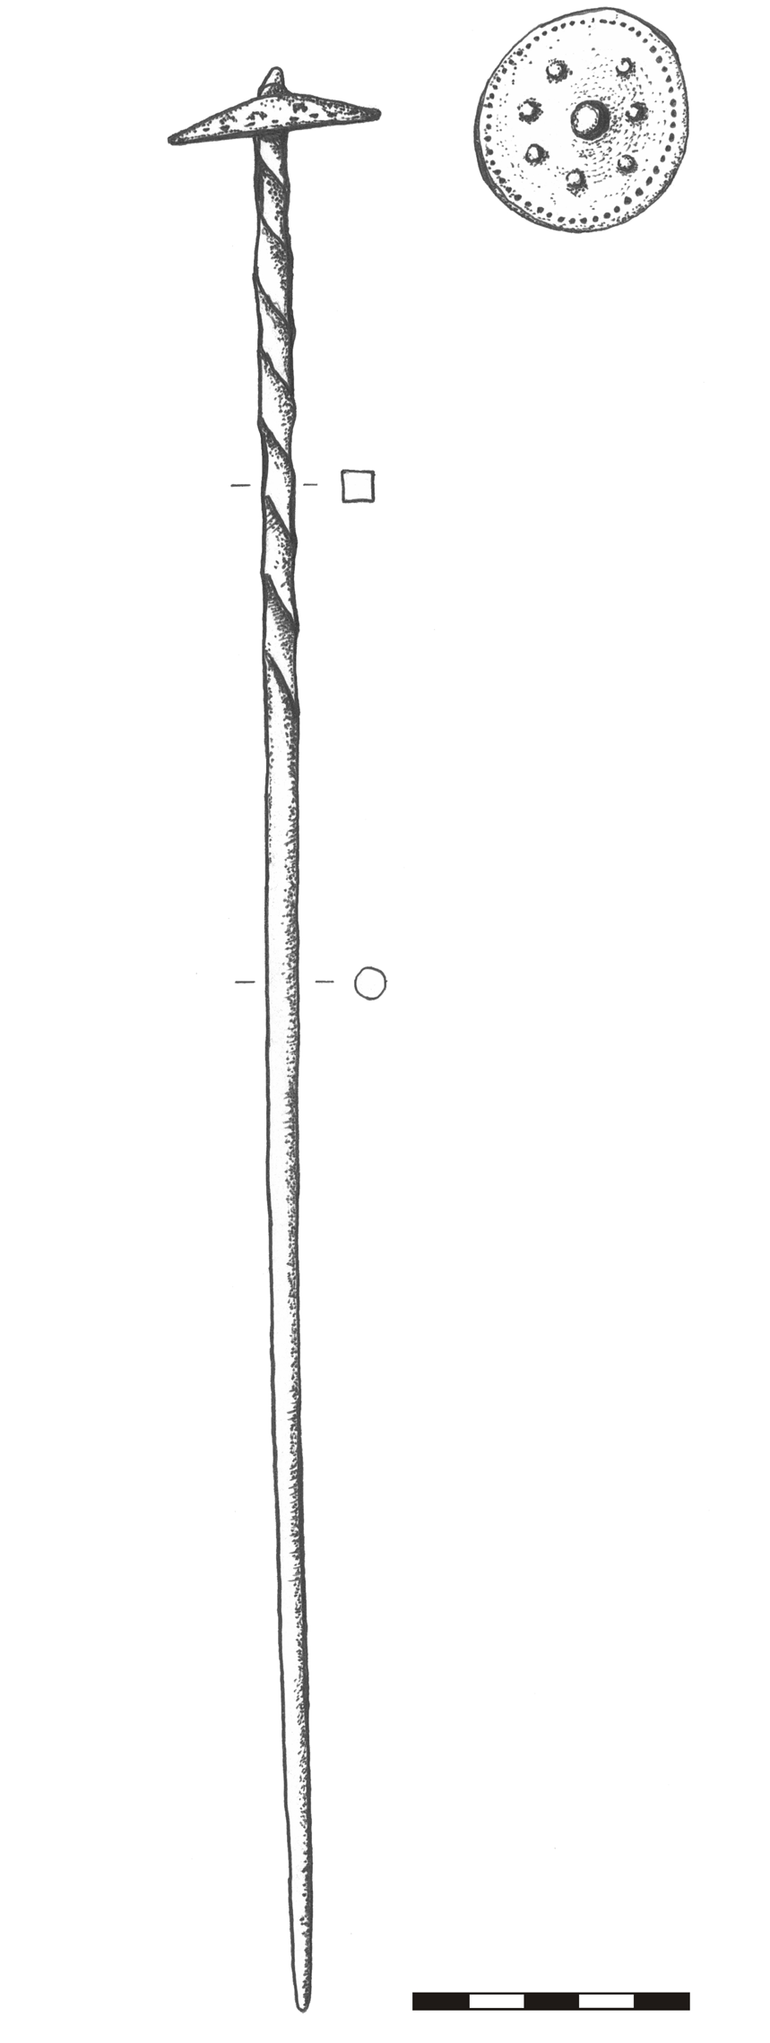 Szpila brązowa z główką gwoździowatą (kapeluszowatą), tordowaną w górnej części nóżki. Drut w przekroju kolisty, u góry – kwadratowy, o grubości 0,4 – 0,6 cm. Długość nóżki – 36,5 cm; główka owalna w planie, o wymiarach 4,3 × 4 cm, zdobiona dookolnie na obwodzie małymi wypustkami, w centrum – wiekszą wypustka otoczona dookolnie przez siedem mniejszych